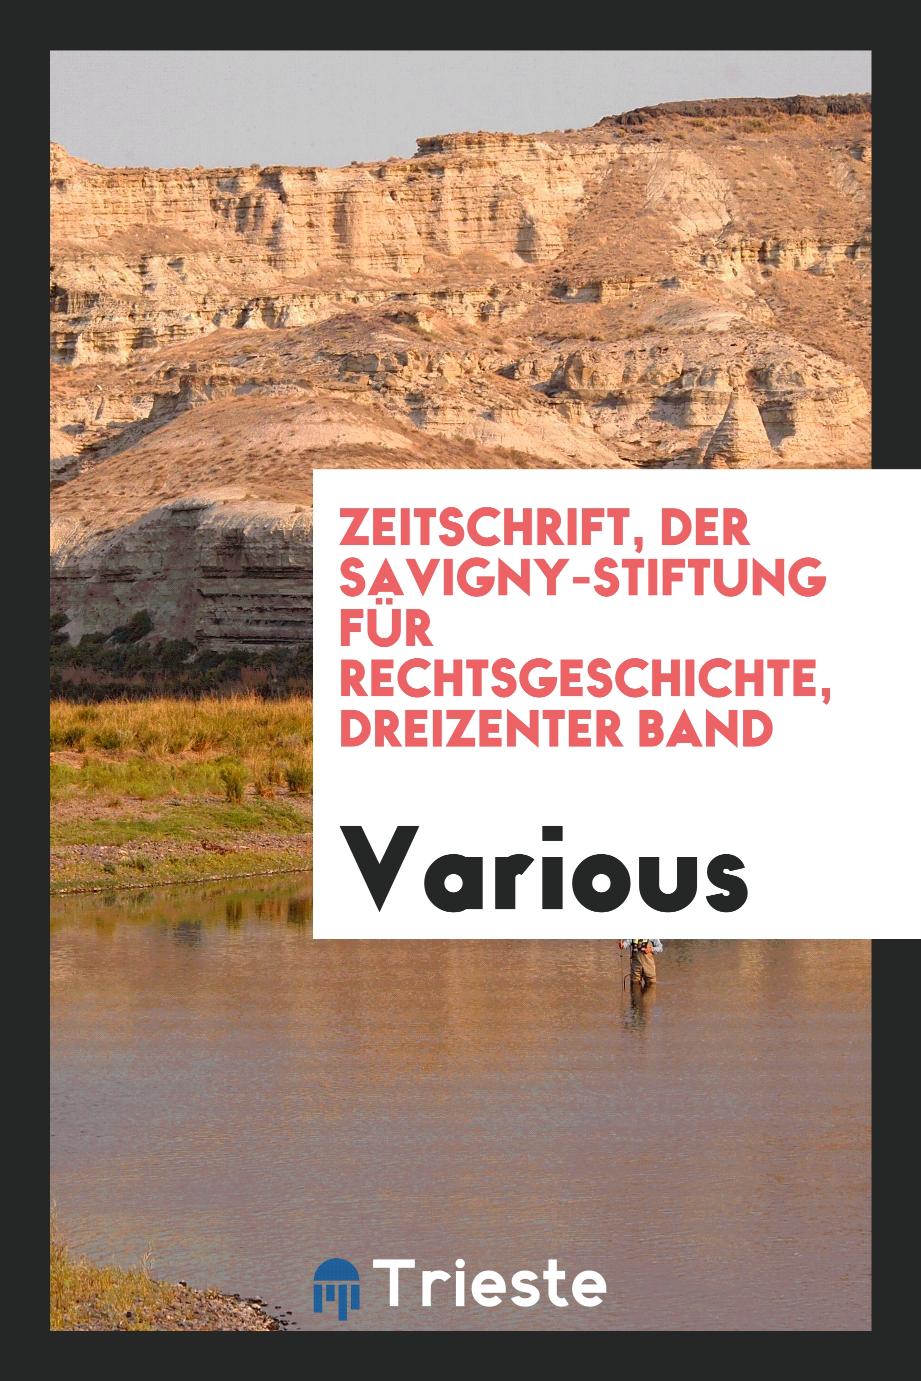 Zeitschrift, Der Savigny-Stiftung für Rechtsgeschichte, dreizenter band